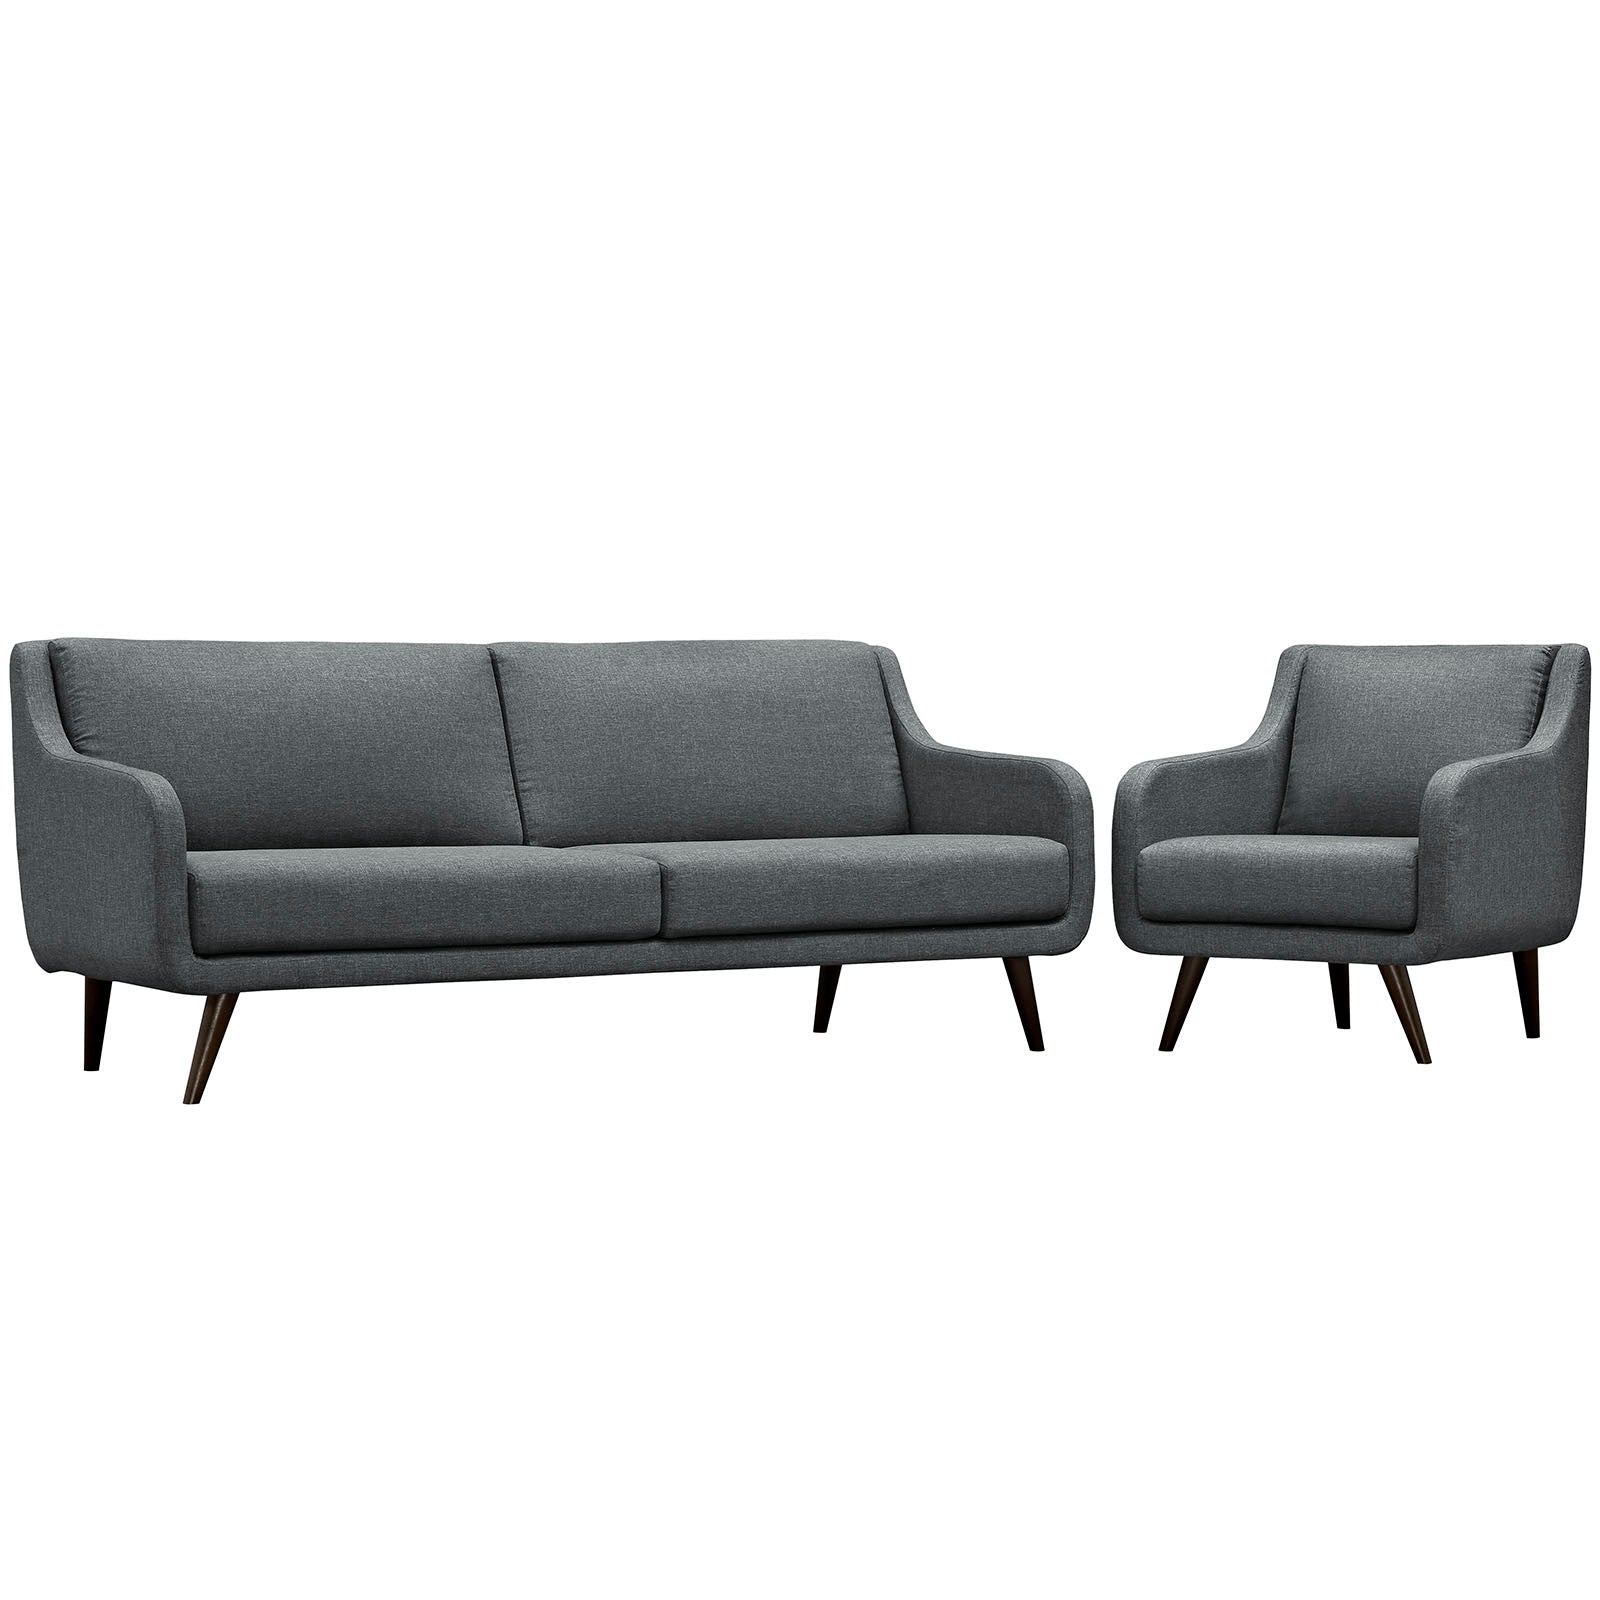 Modway Living Room Sets - Verve Living Room Set Set Of 2 Gray